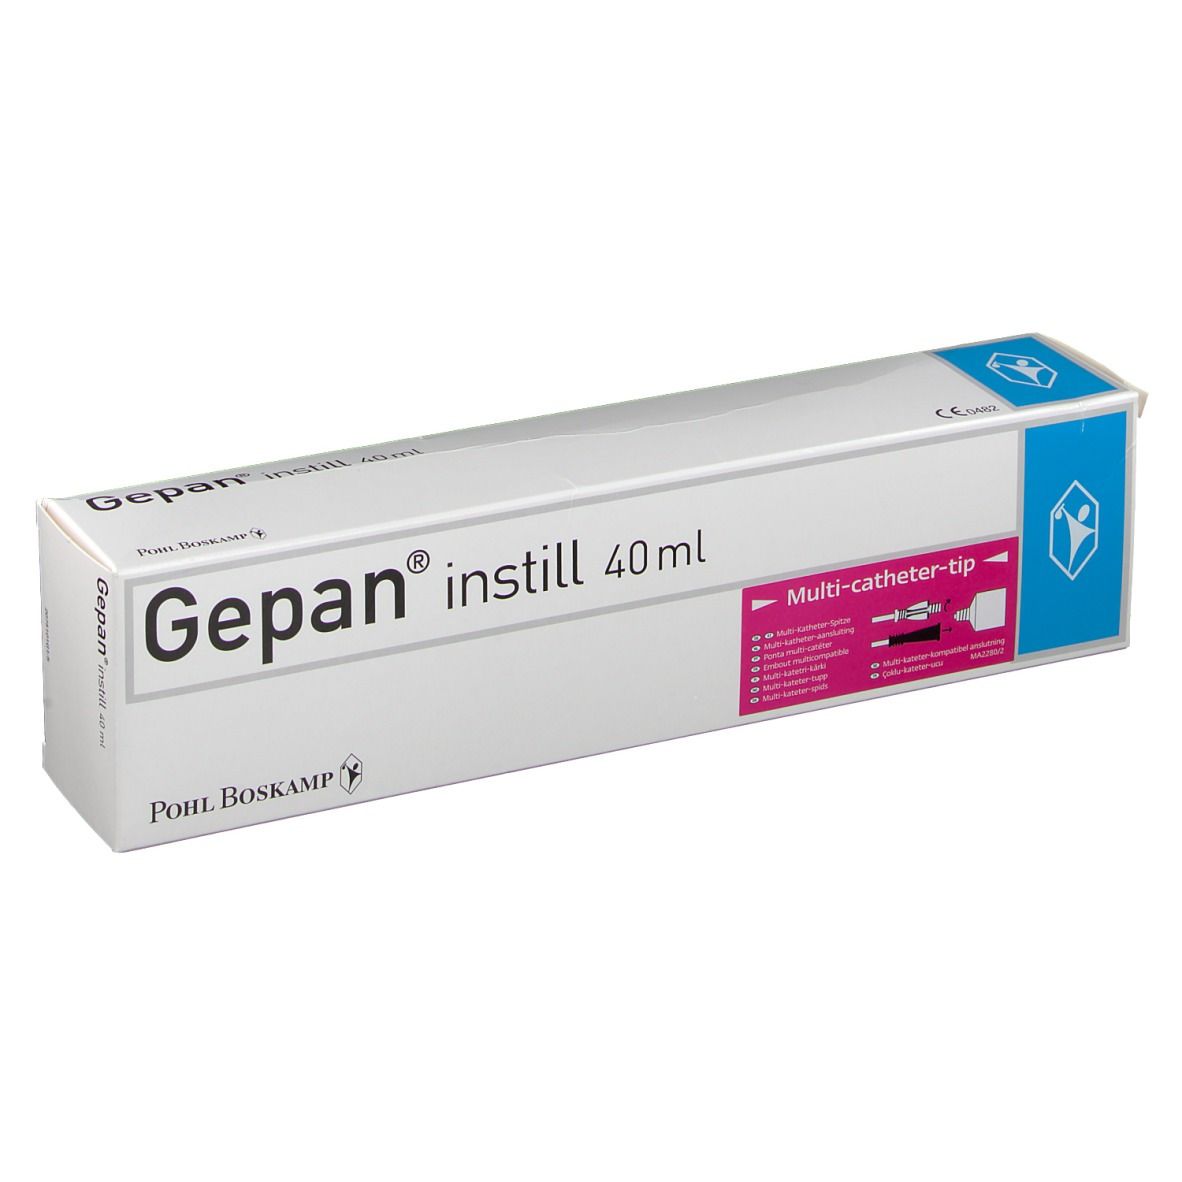 Gepan® instill